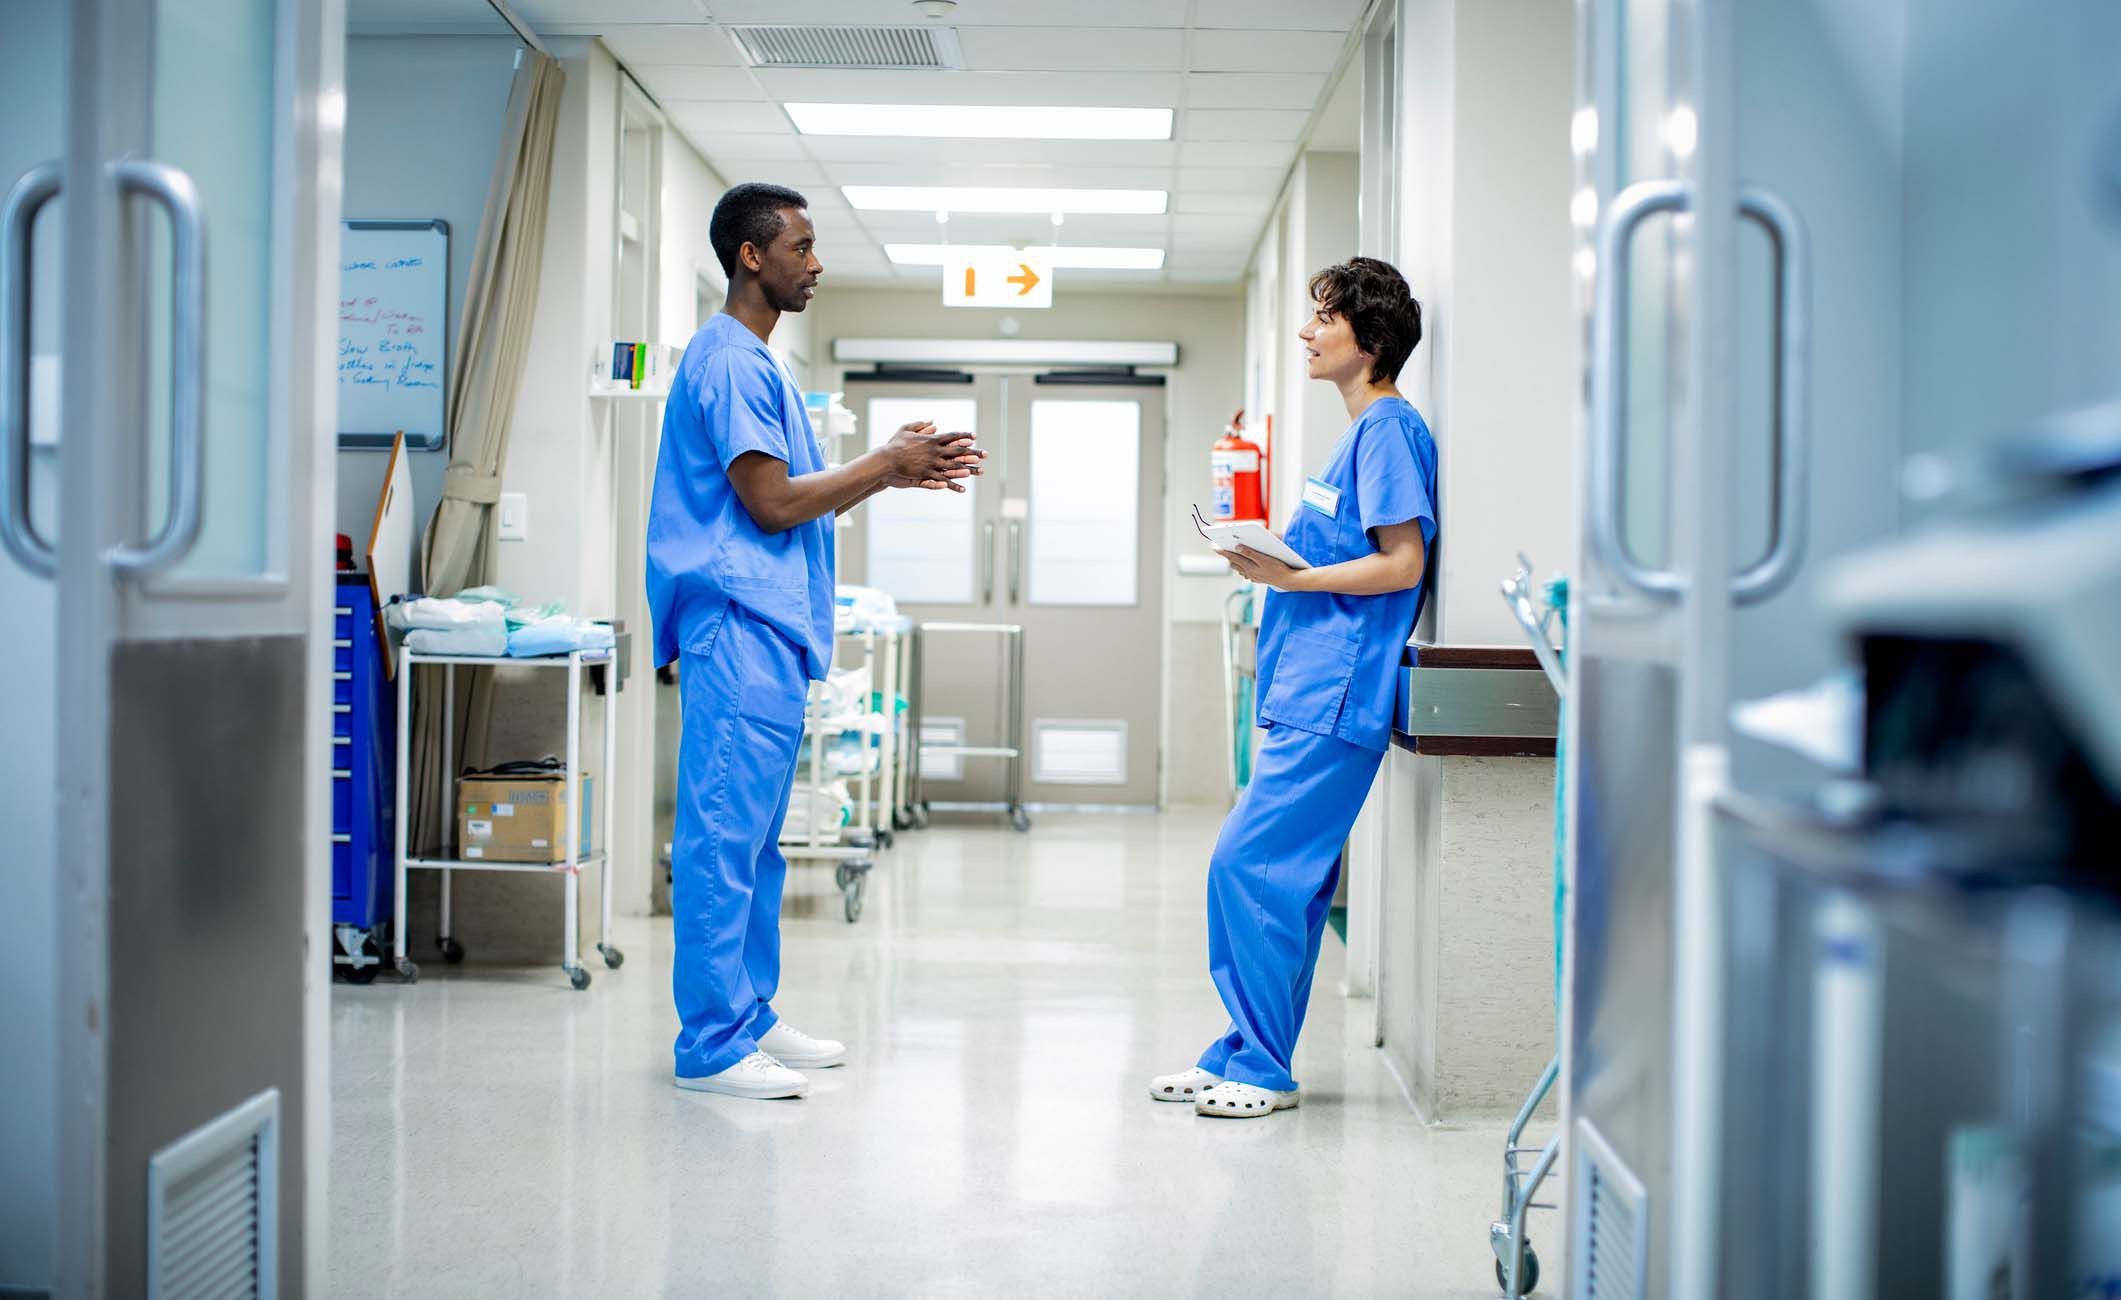 Zwei Krankenpflegehelfer stehen im Krankenhausflur und unterhalten sich